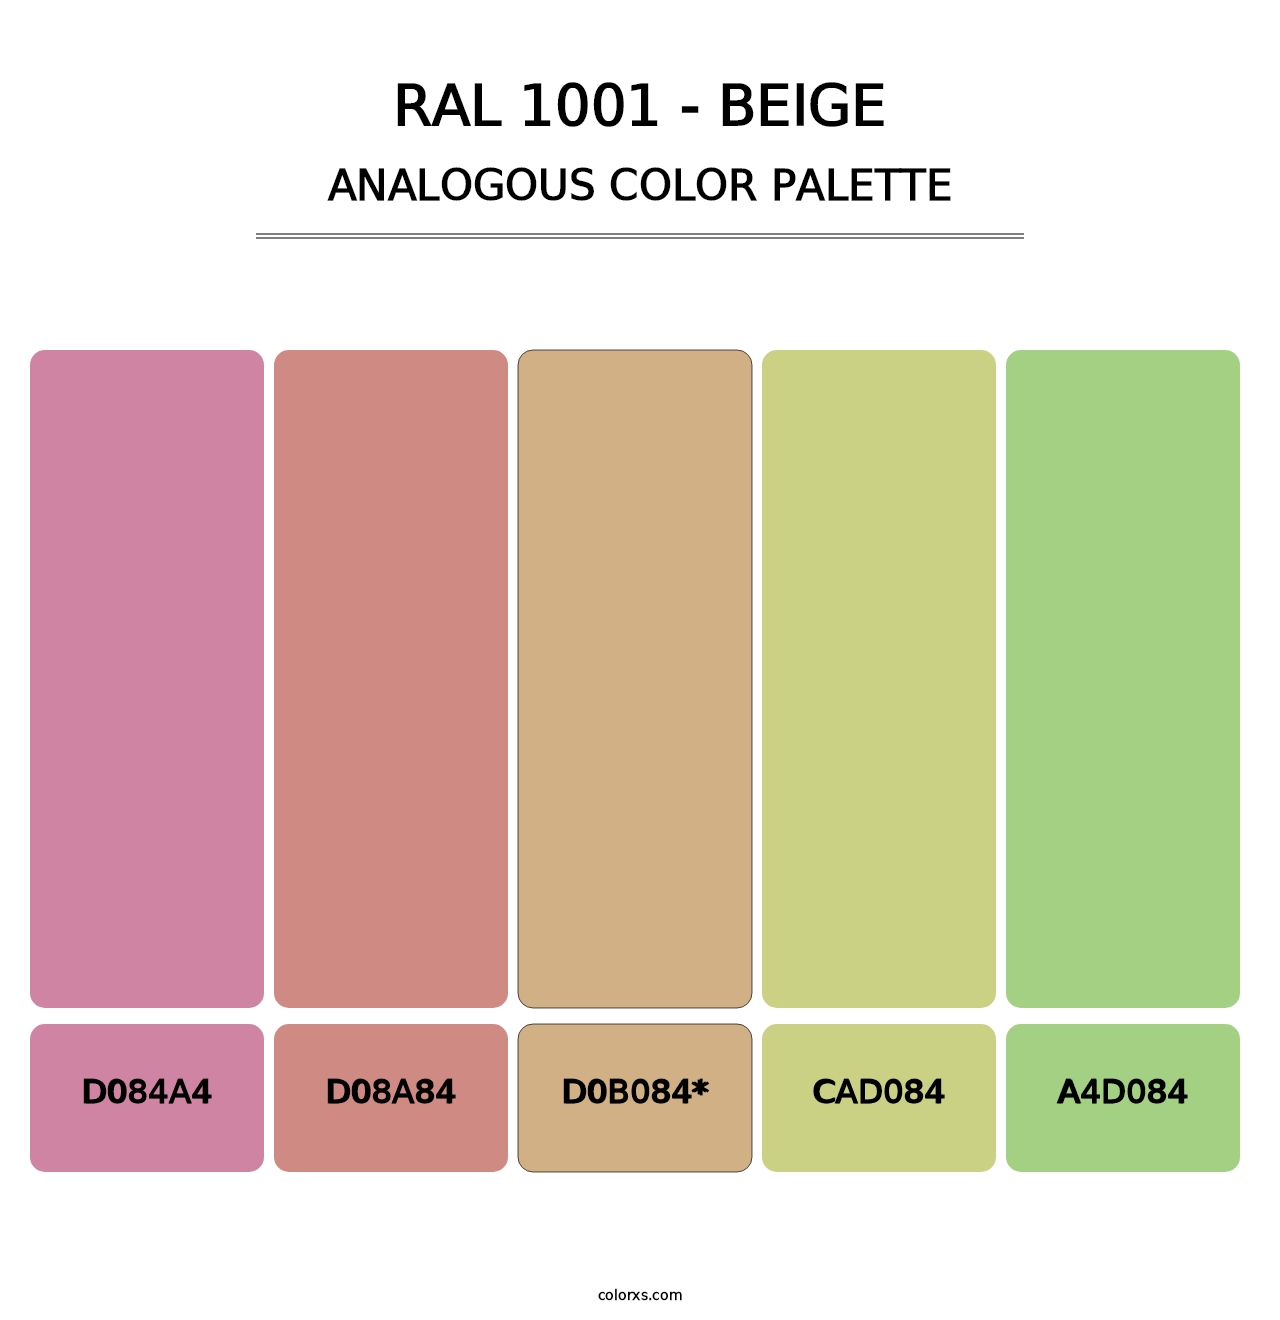 RAL 1001 - Beige - Analogous Color Palette